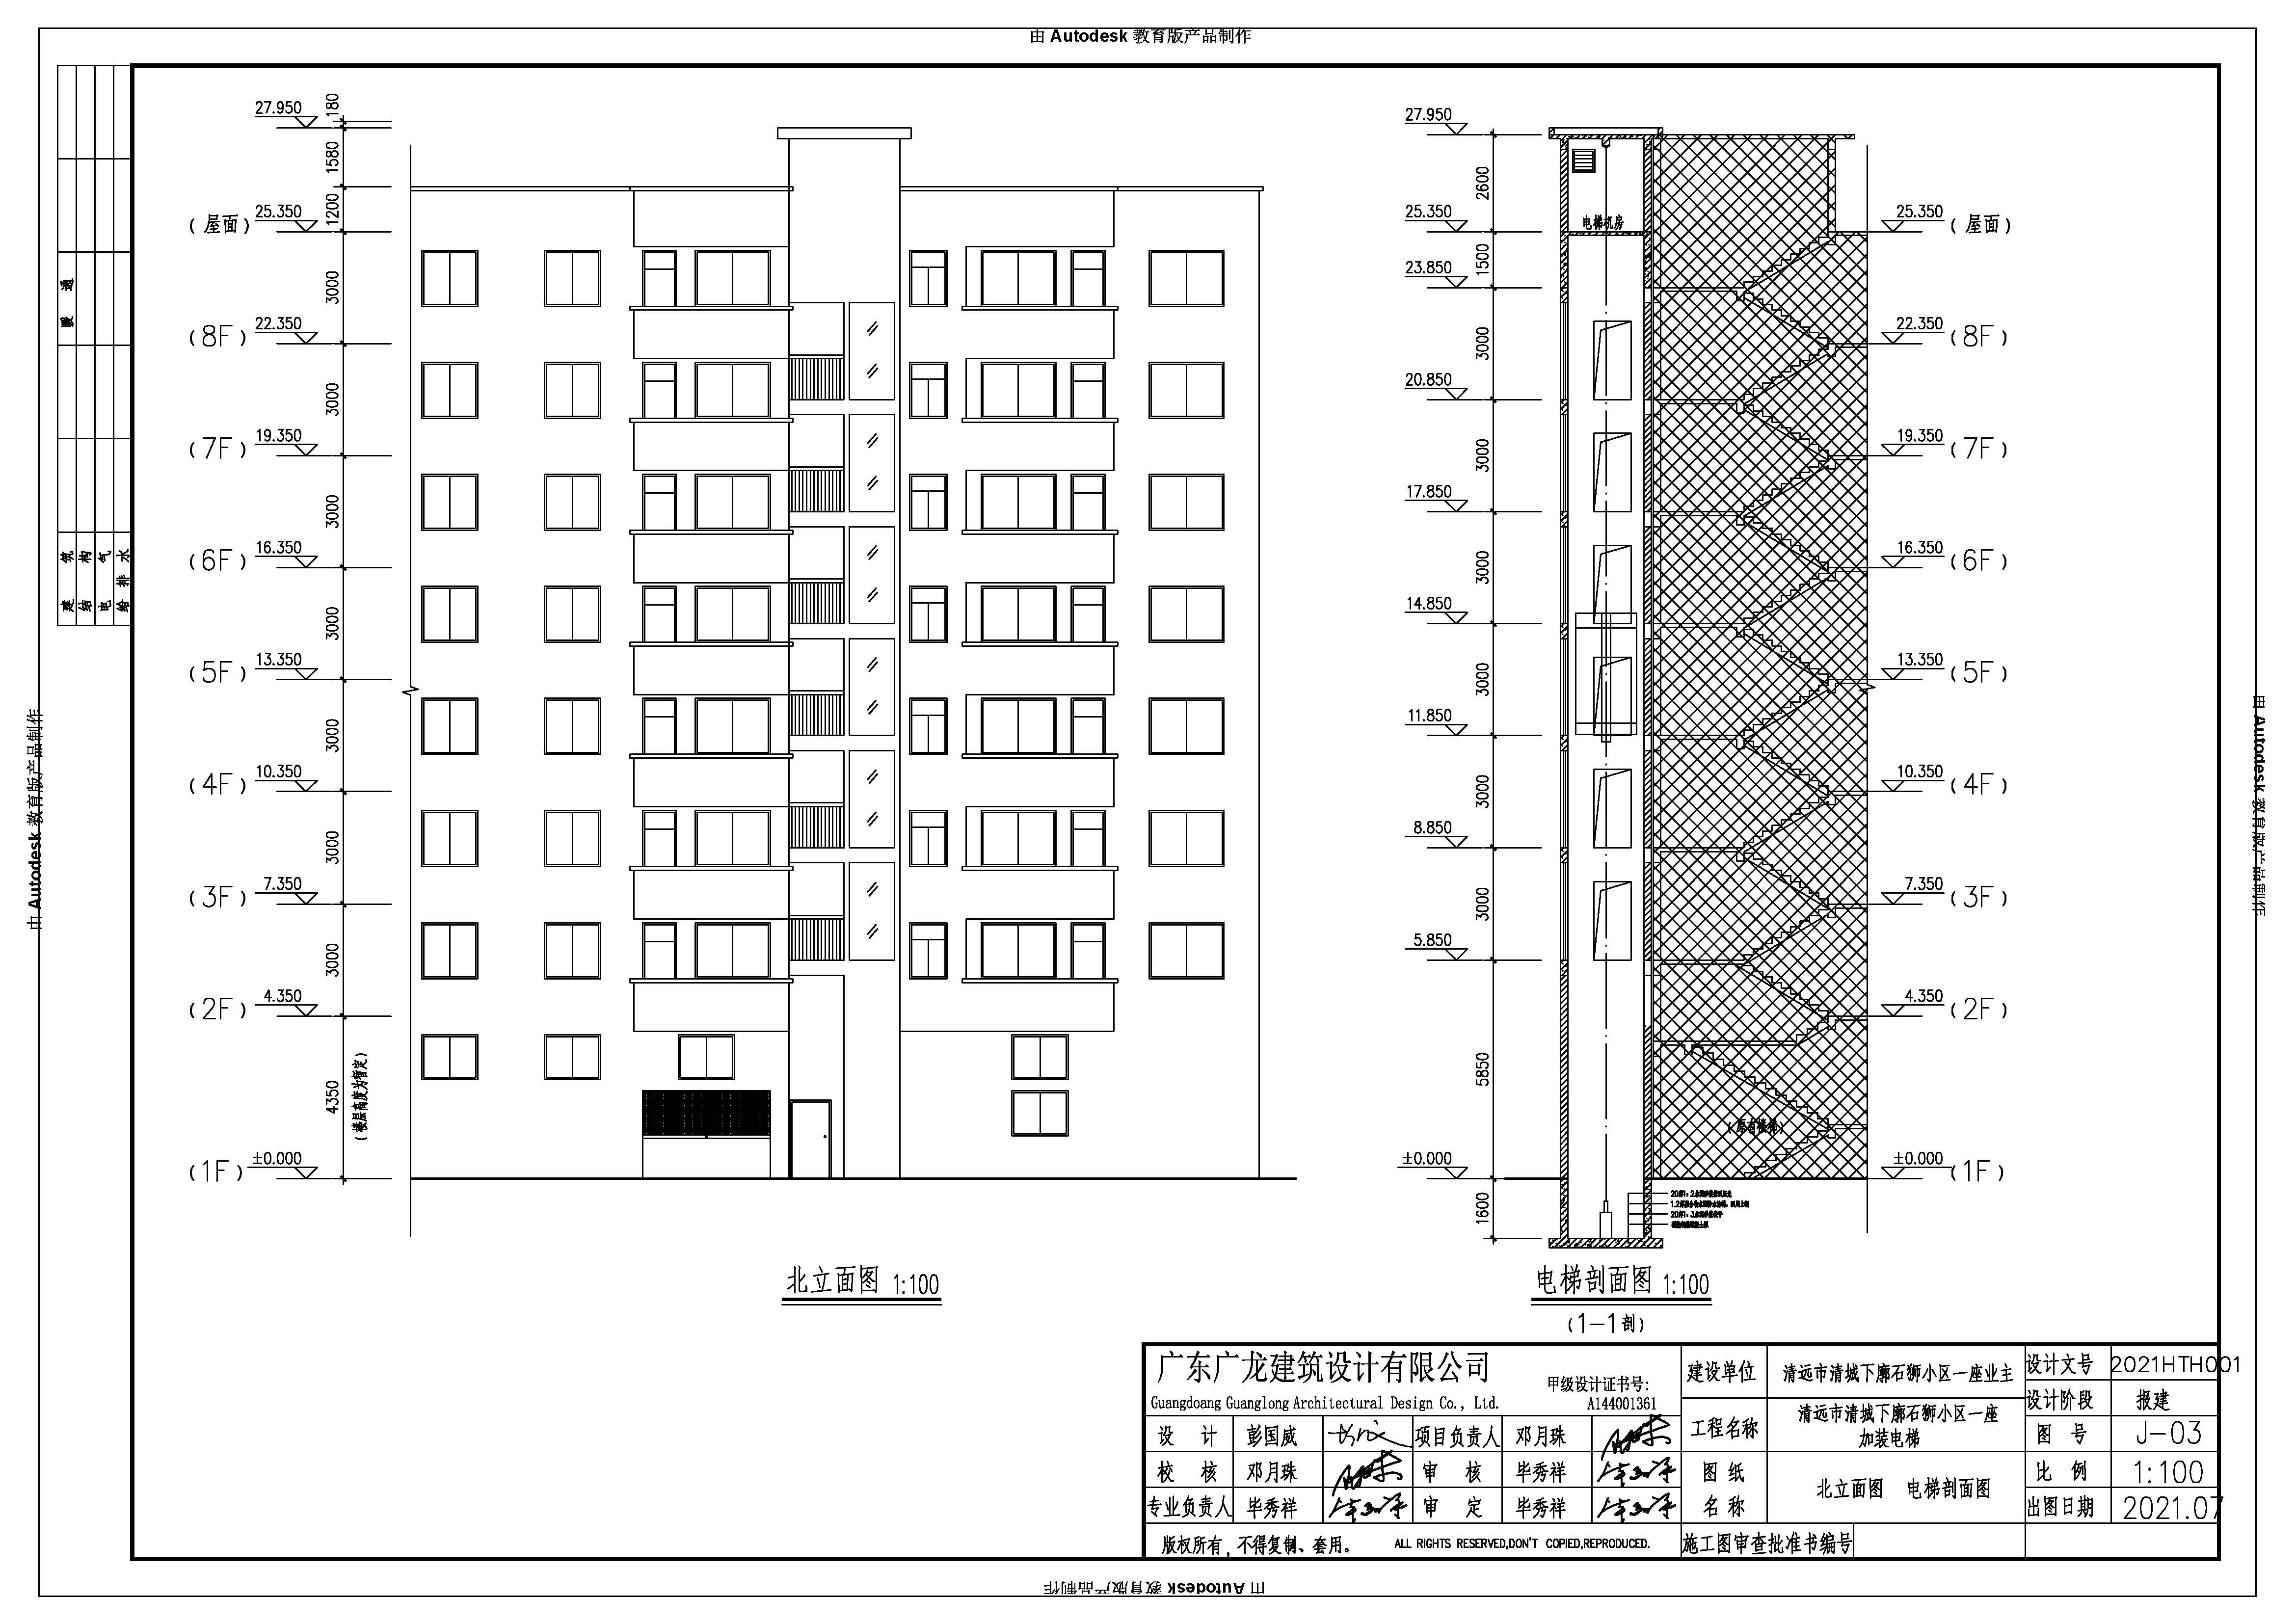 清城下廓石狮小区一座加装电梯_t3 Model (1)_页面_2.jpg